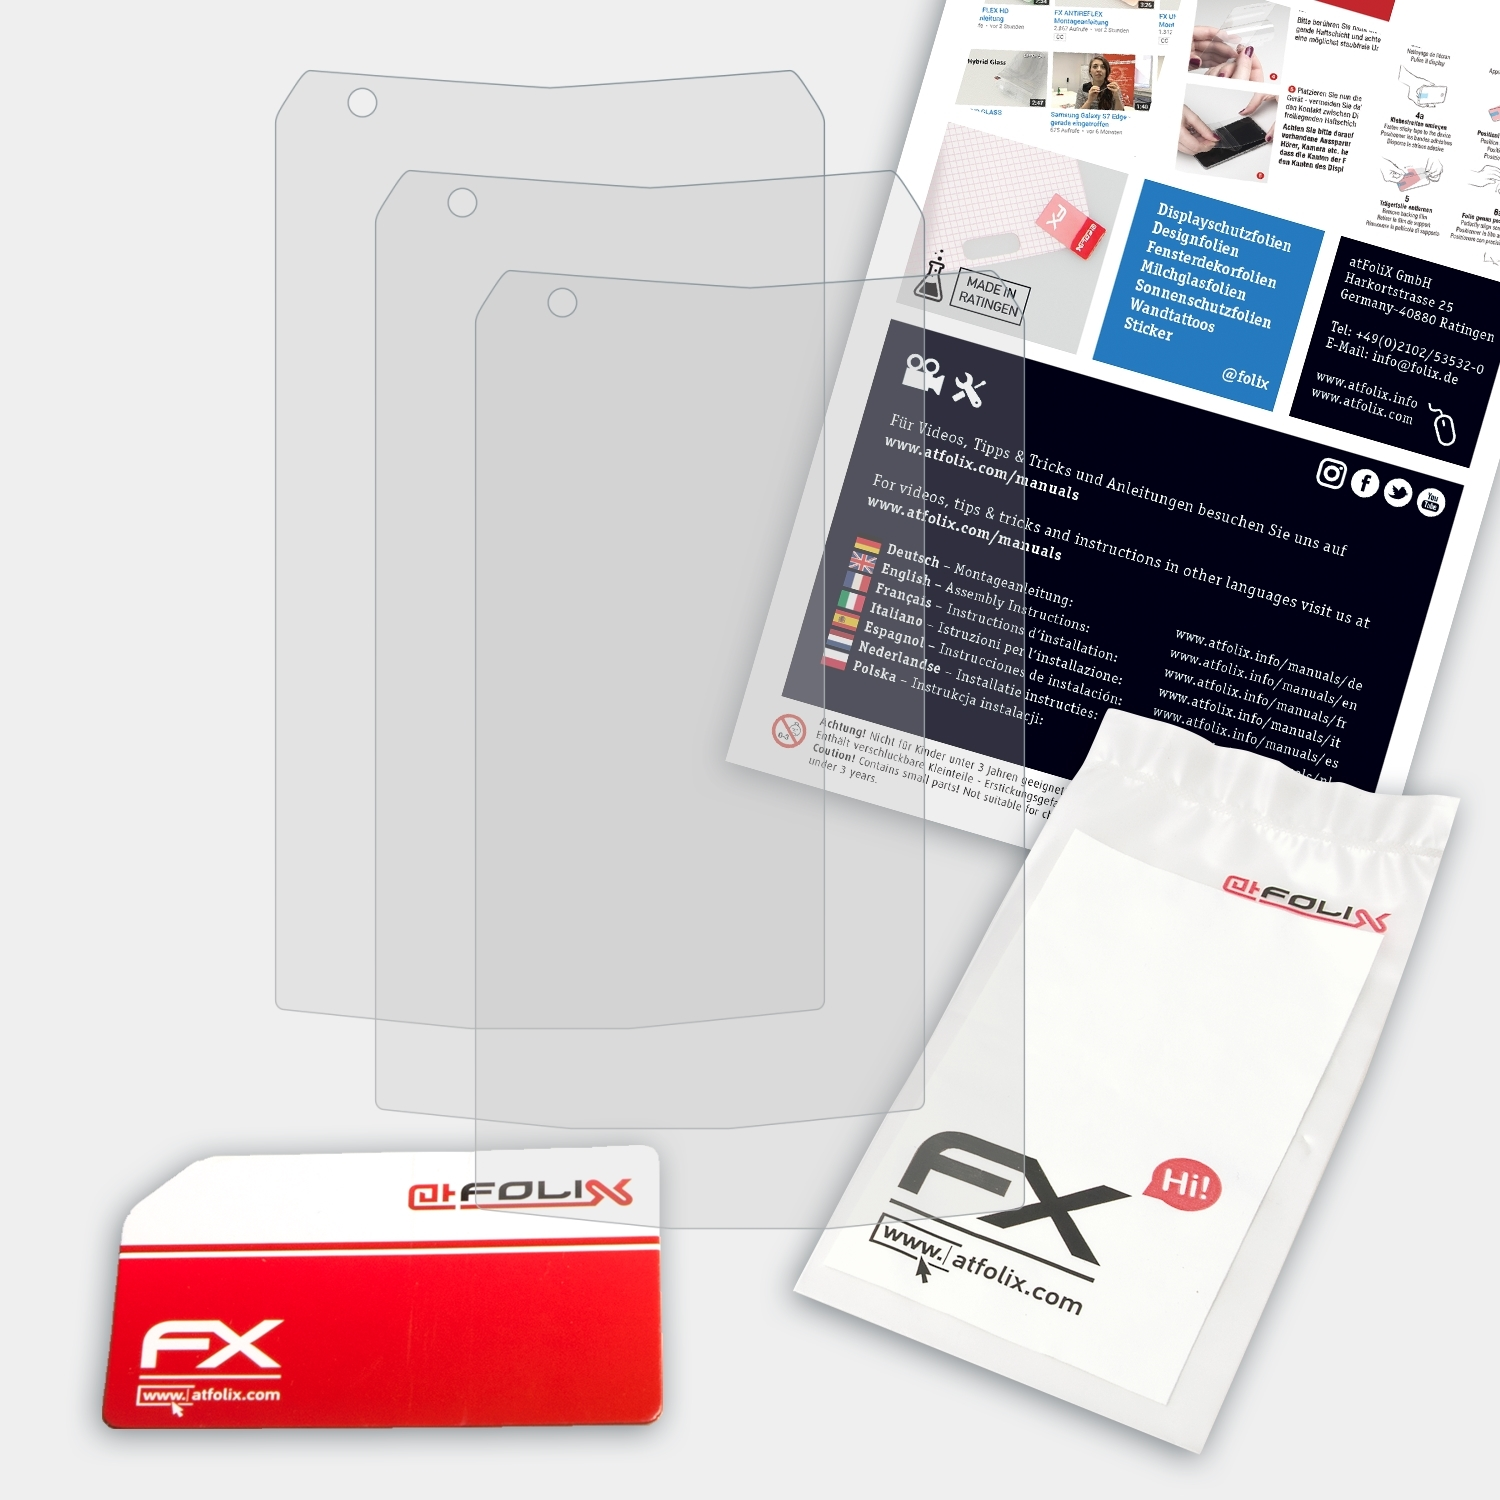 ATFOLIX 3x FX-Antireflex Displayschutz(für Sonim XP7)